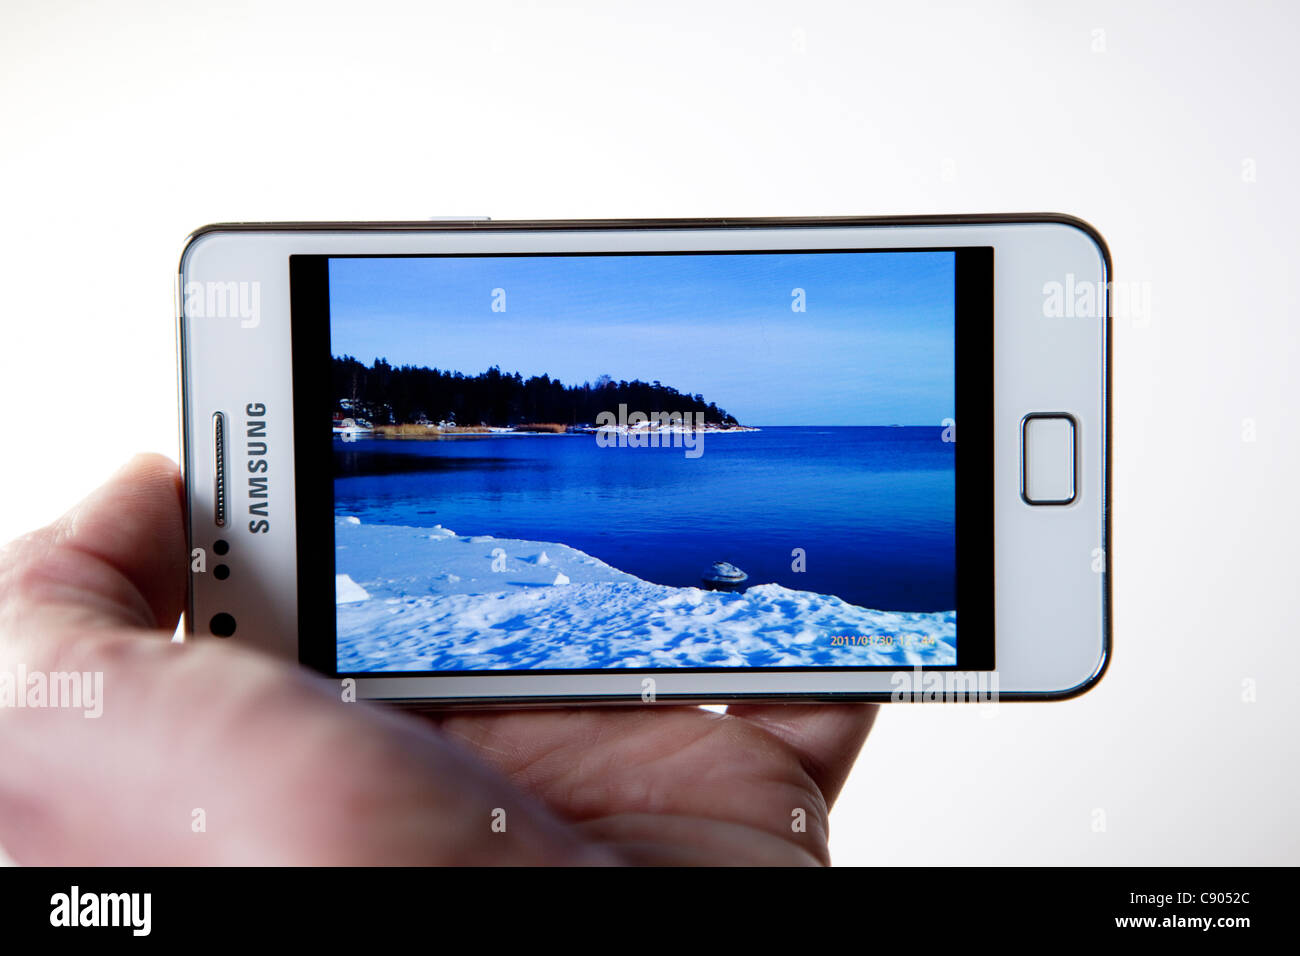 Visualización de imágenes en su Samsung Galaxy S II I9100 Smartphone Foto de stock